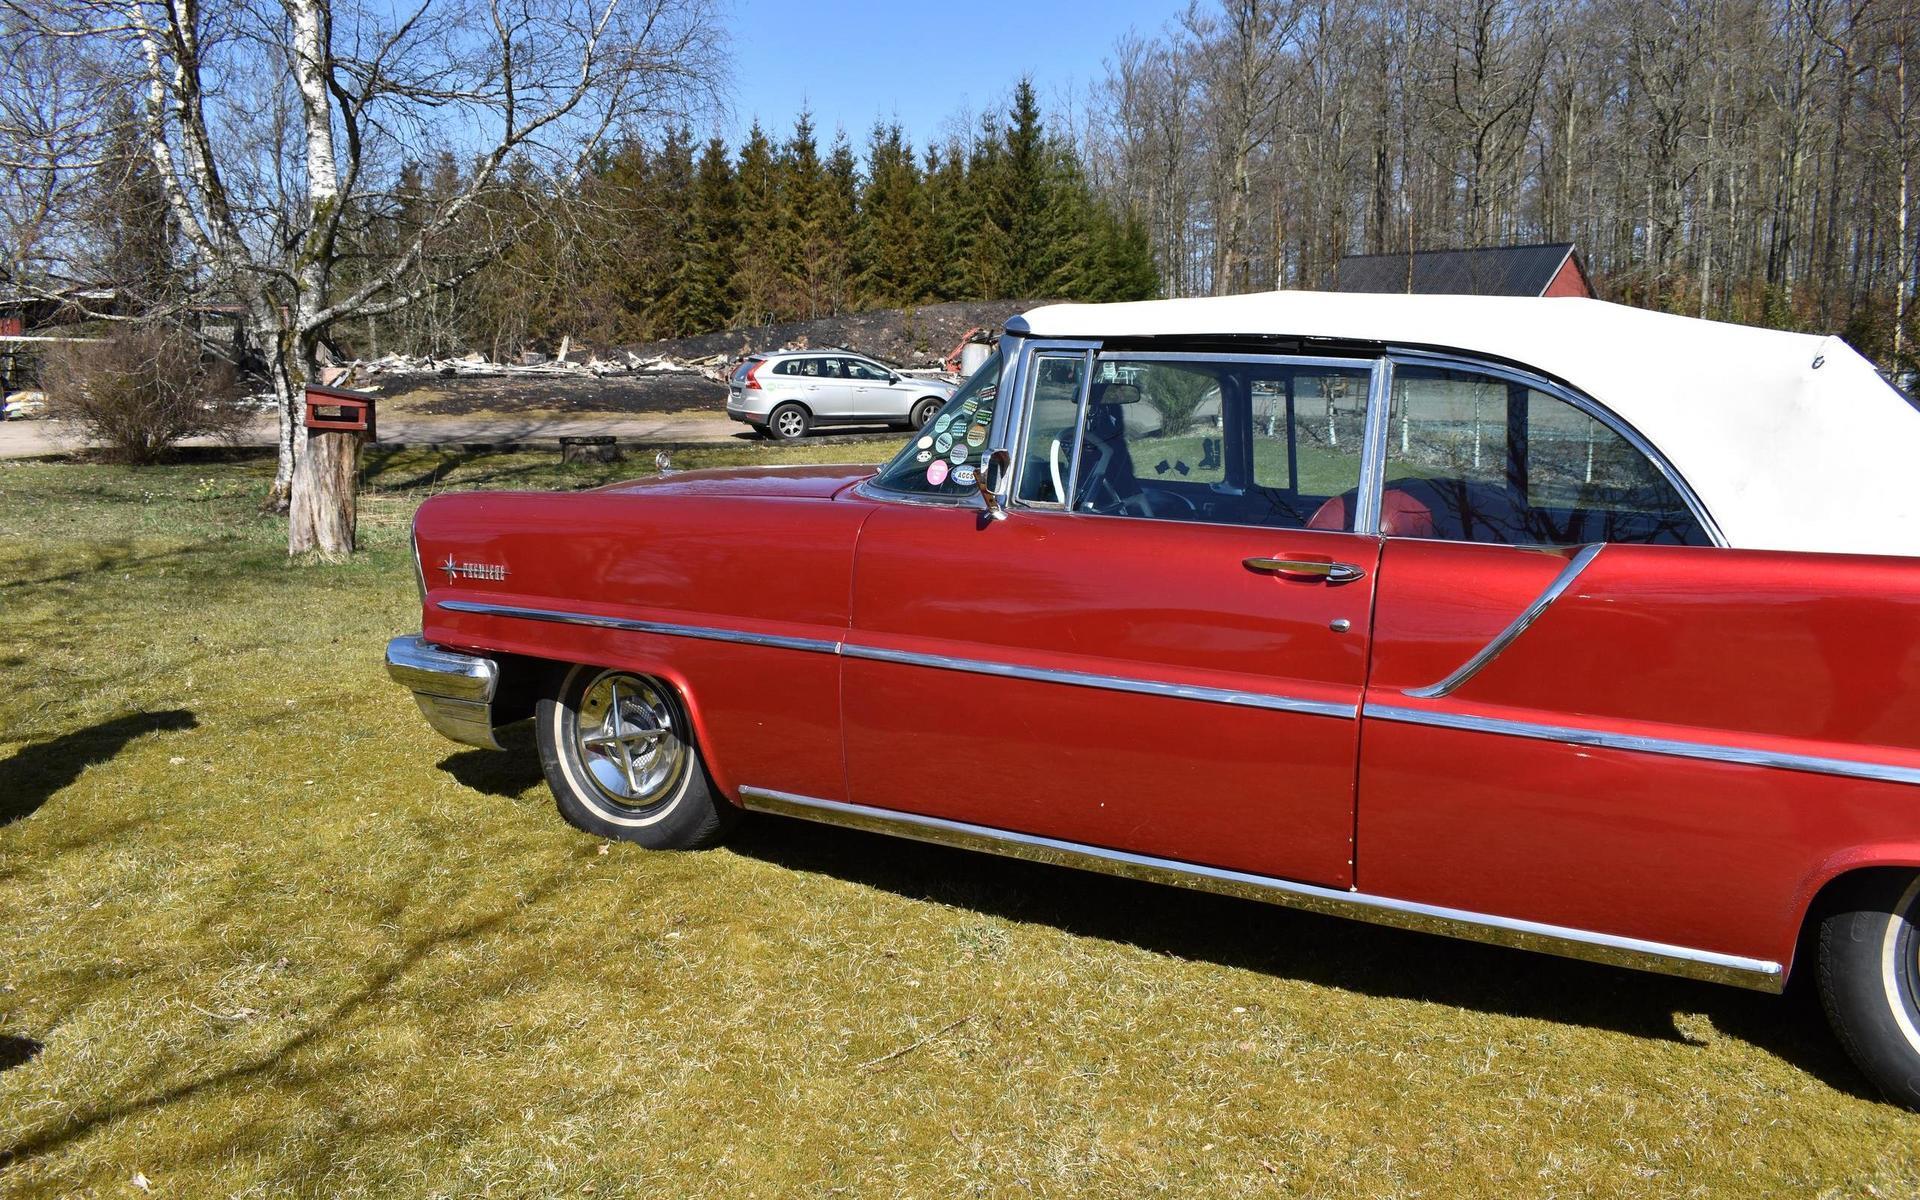 Tony Persson lyckades också rädda sin jänkare, en Lincoln cabriolet från 1957.